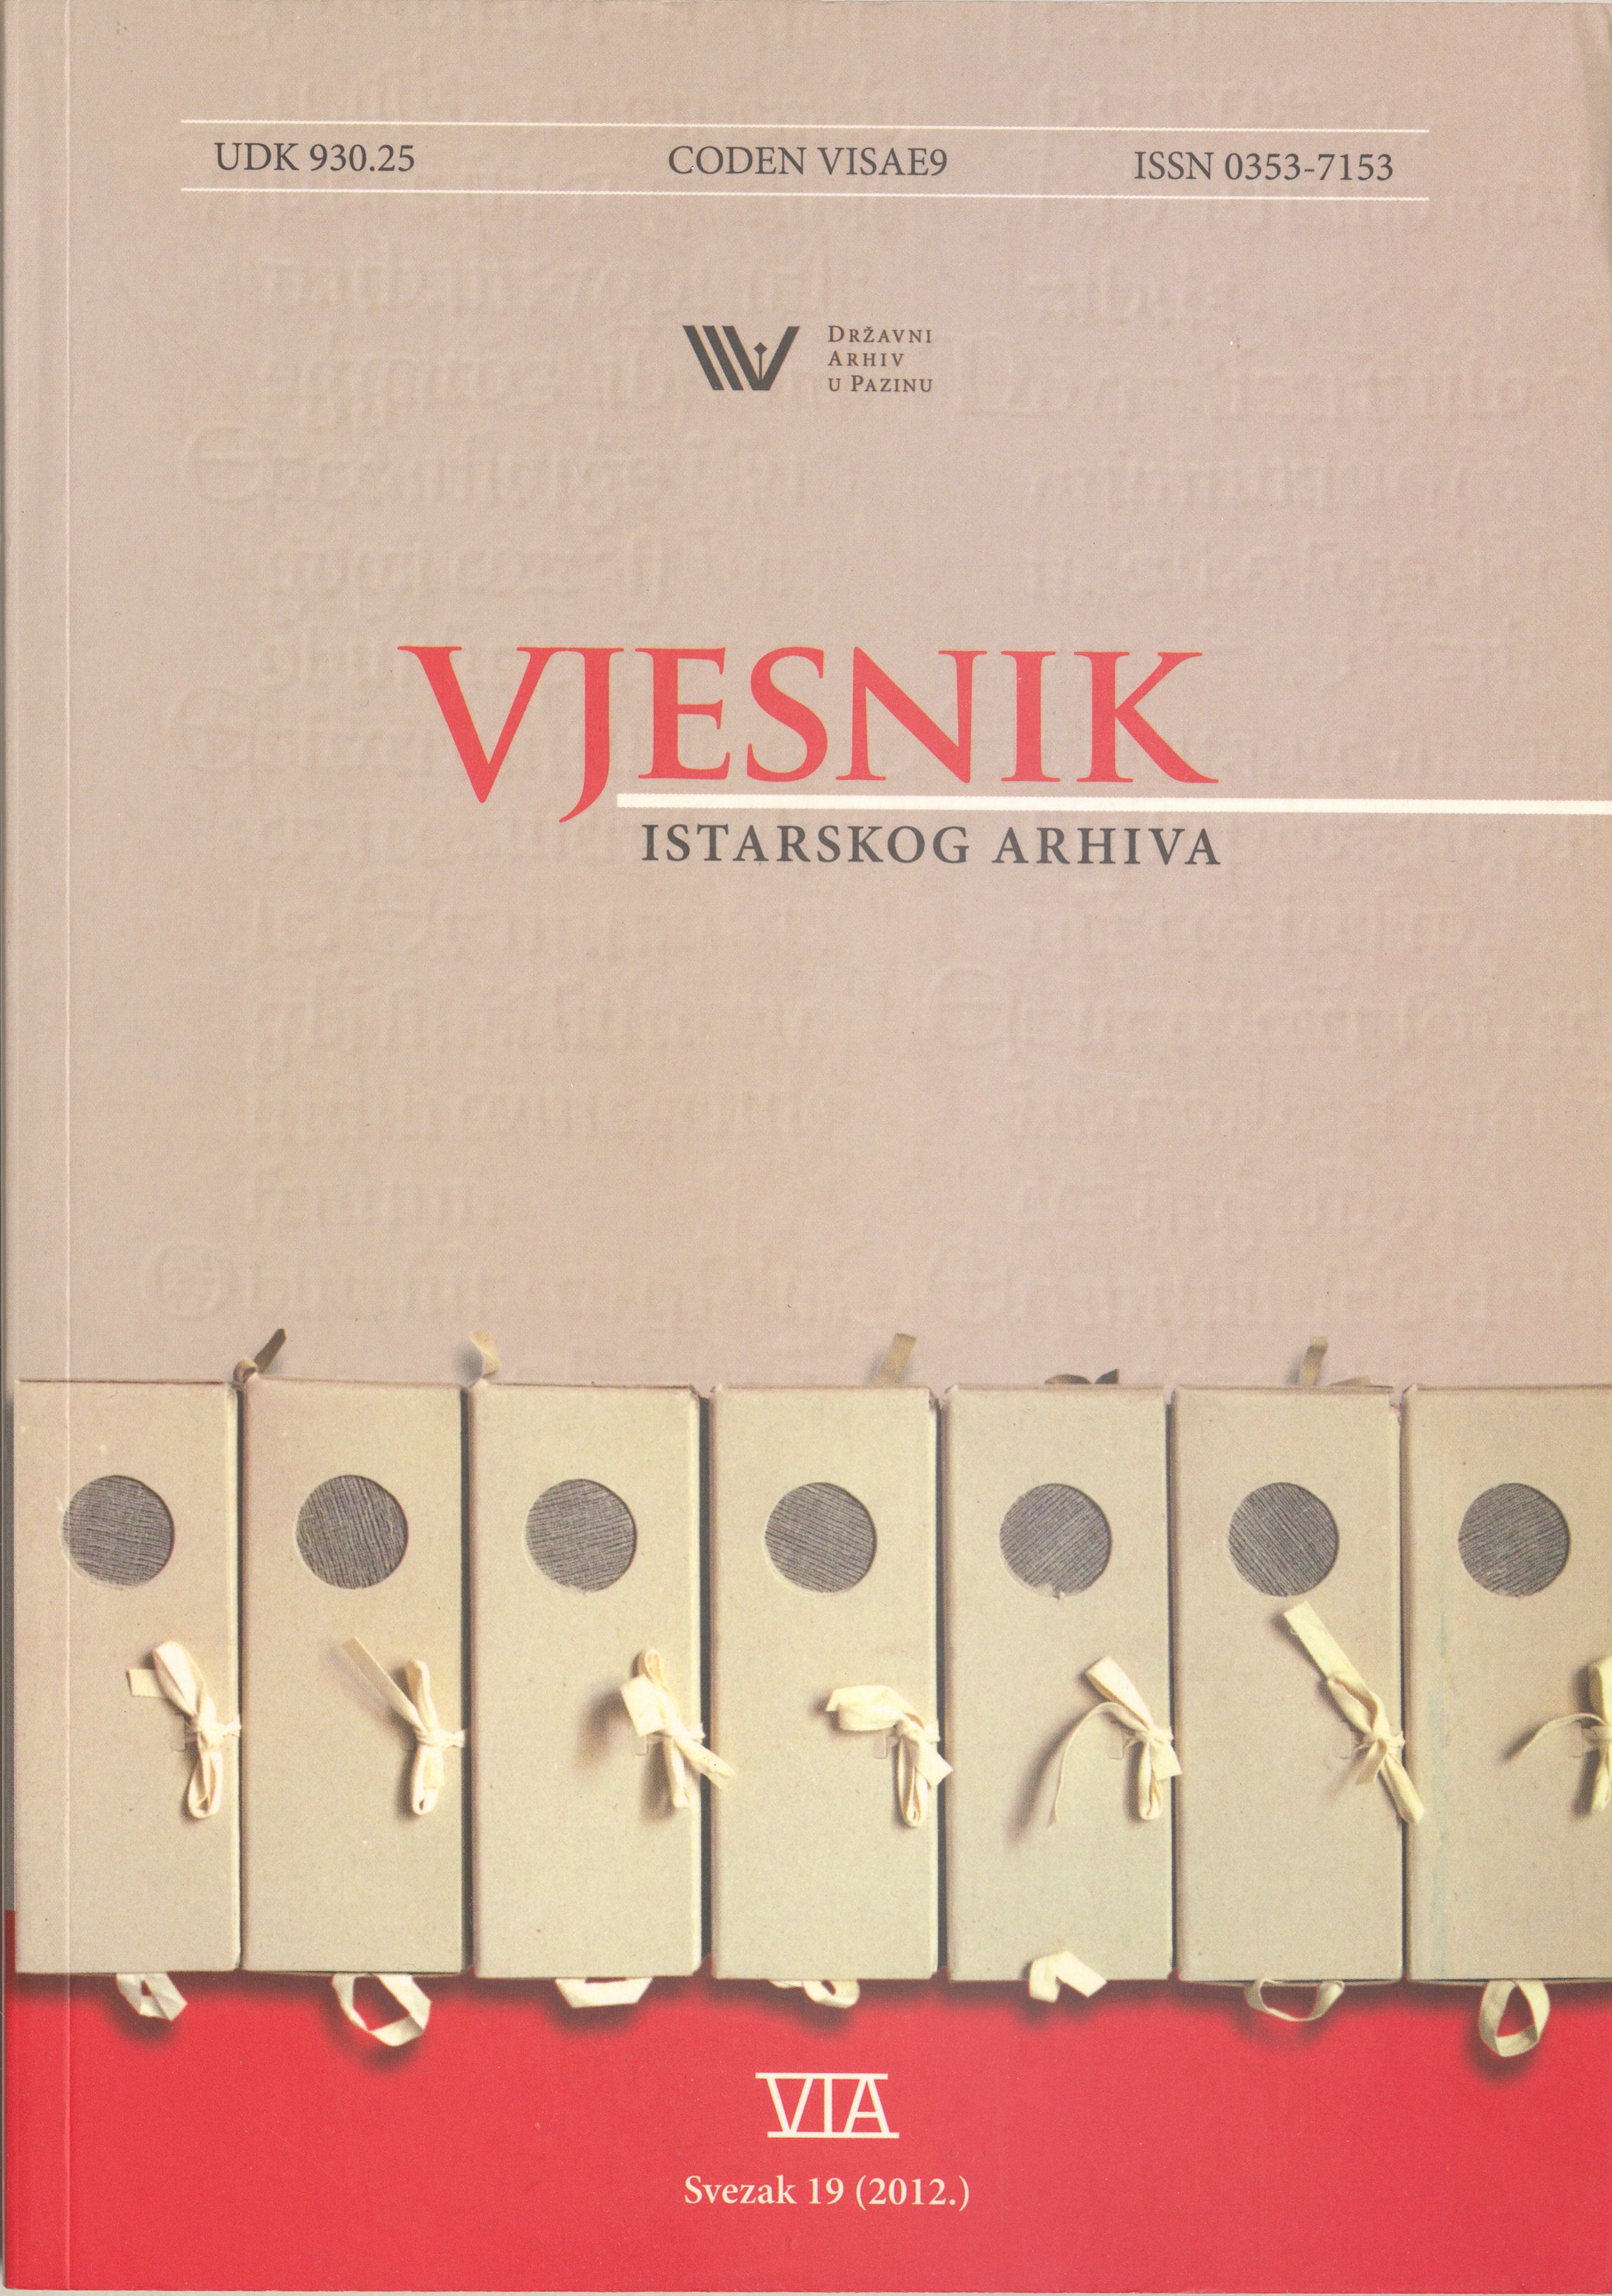 					Visualizza Vjesnik istarskog arhiva sv. 19 (2012.)
				